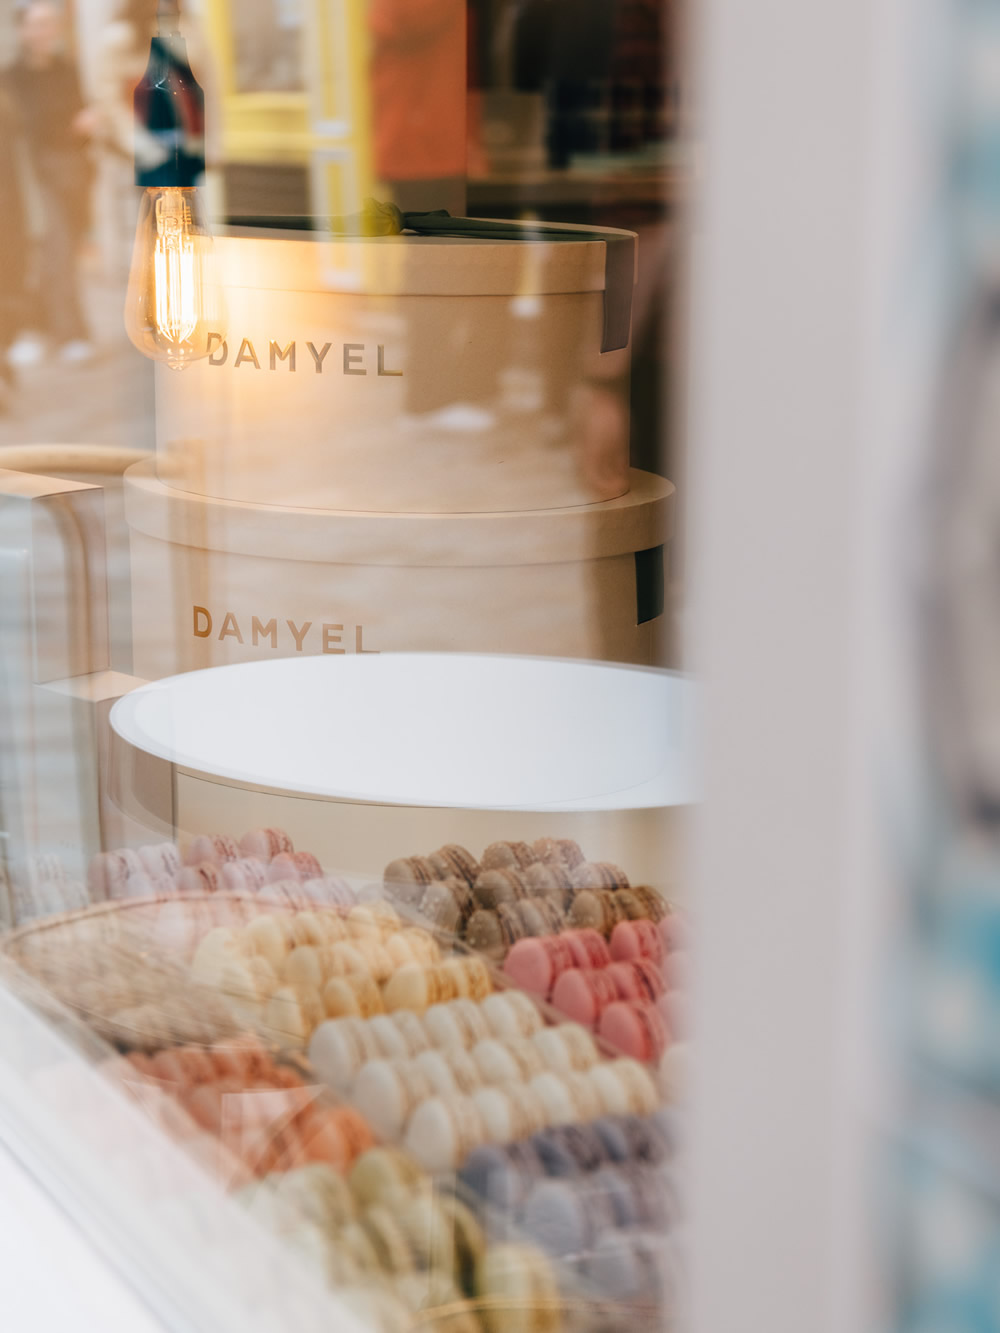 Macarons Paris shops